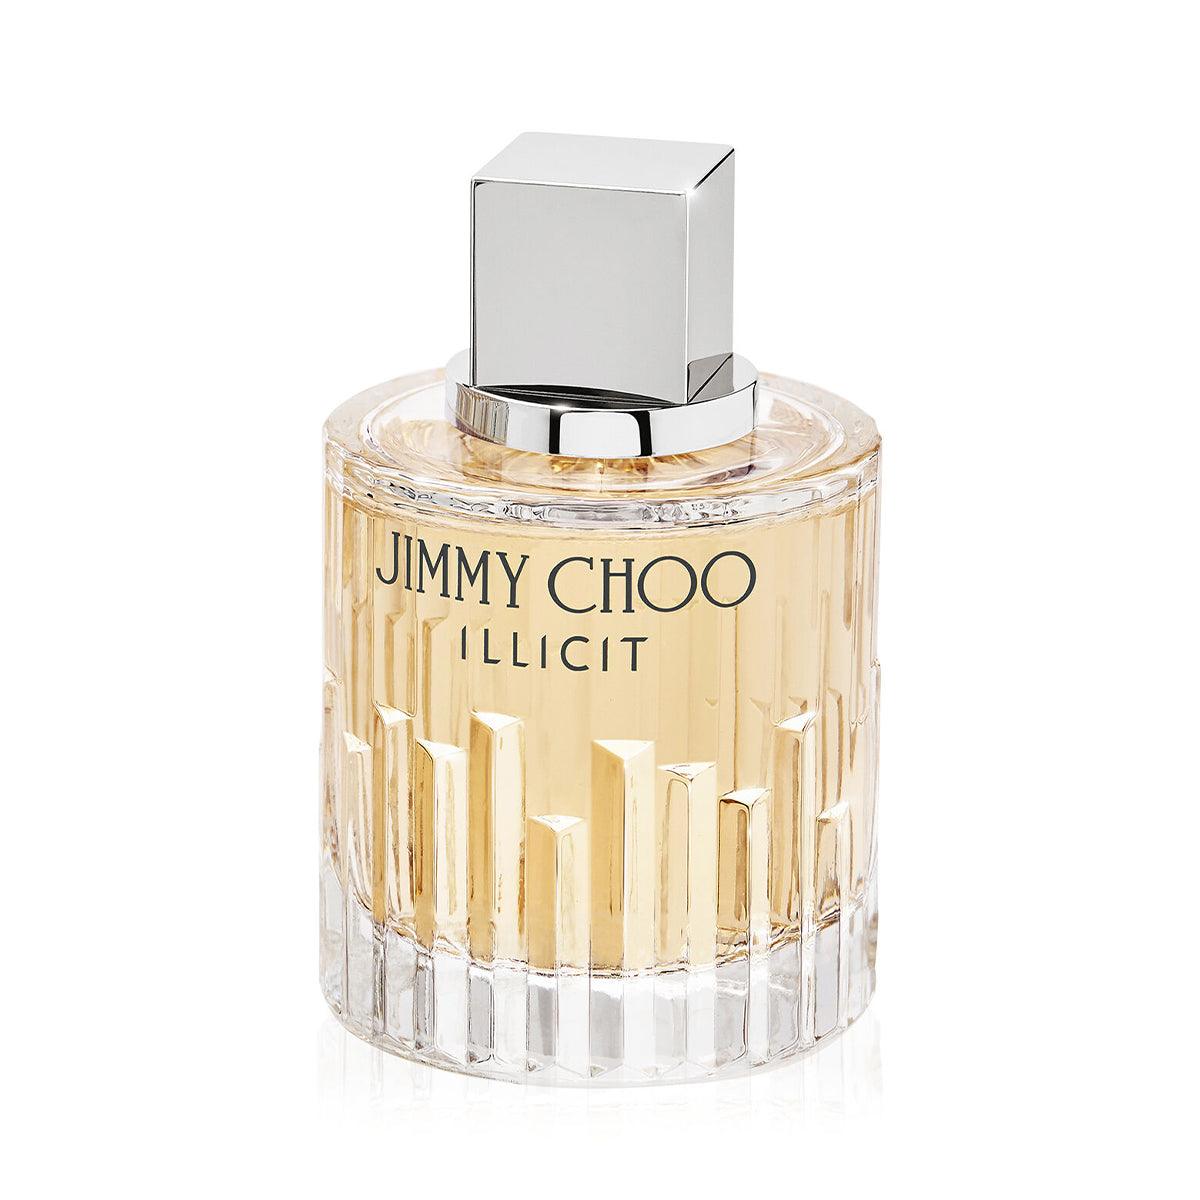 Jimmy Choo Illicit Edp Spray 100ml-Perfume - Allurebeautypk